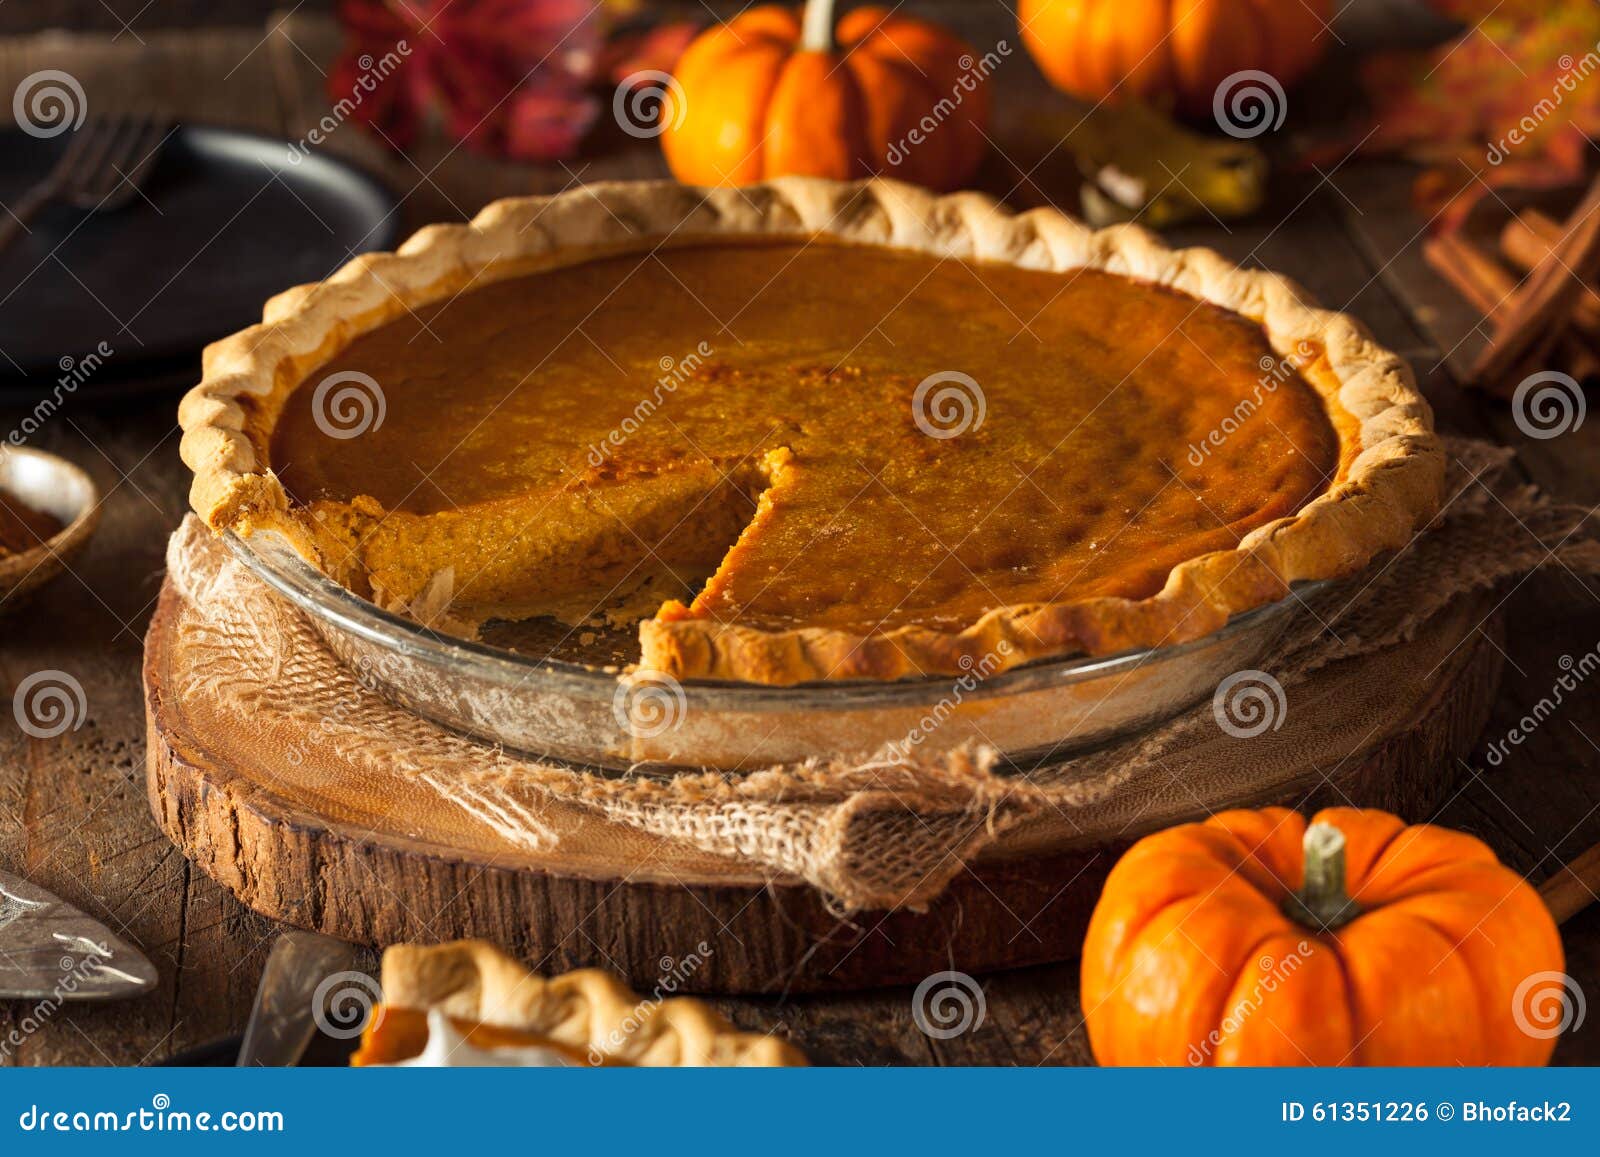 festive homemade pumpkin pie